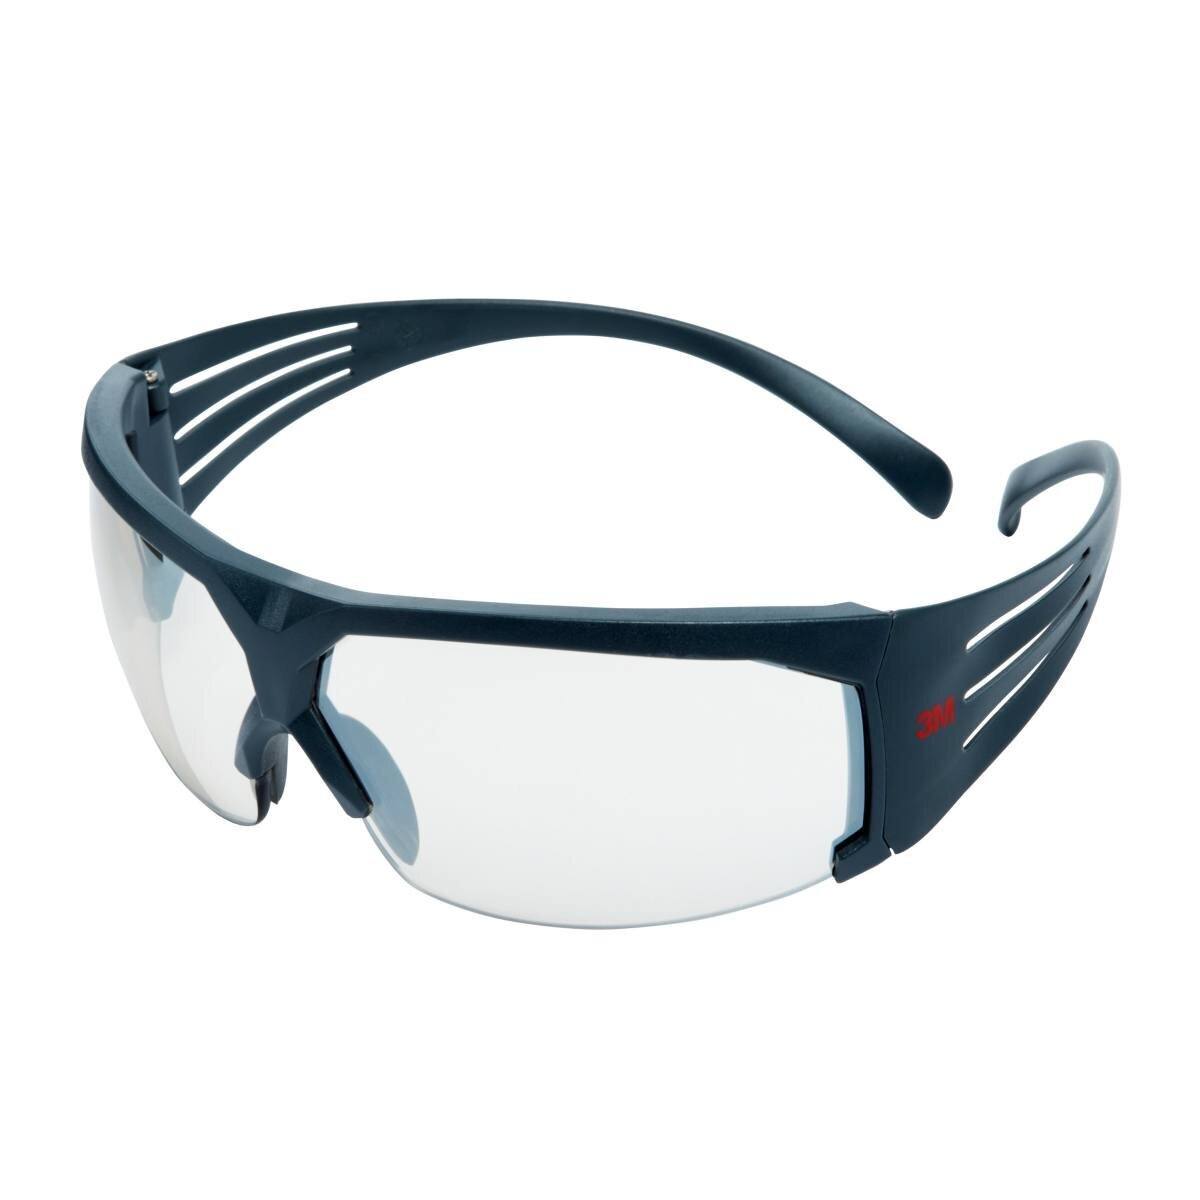 3M SecureFit 600 Schutzbrille, graue Bügel, Antikratz-Beschichtung, verspiegelte Scheibe für innen/außen, SF610AS-EU